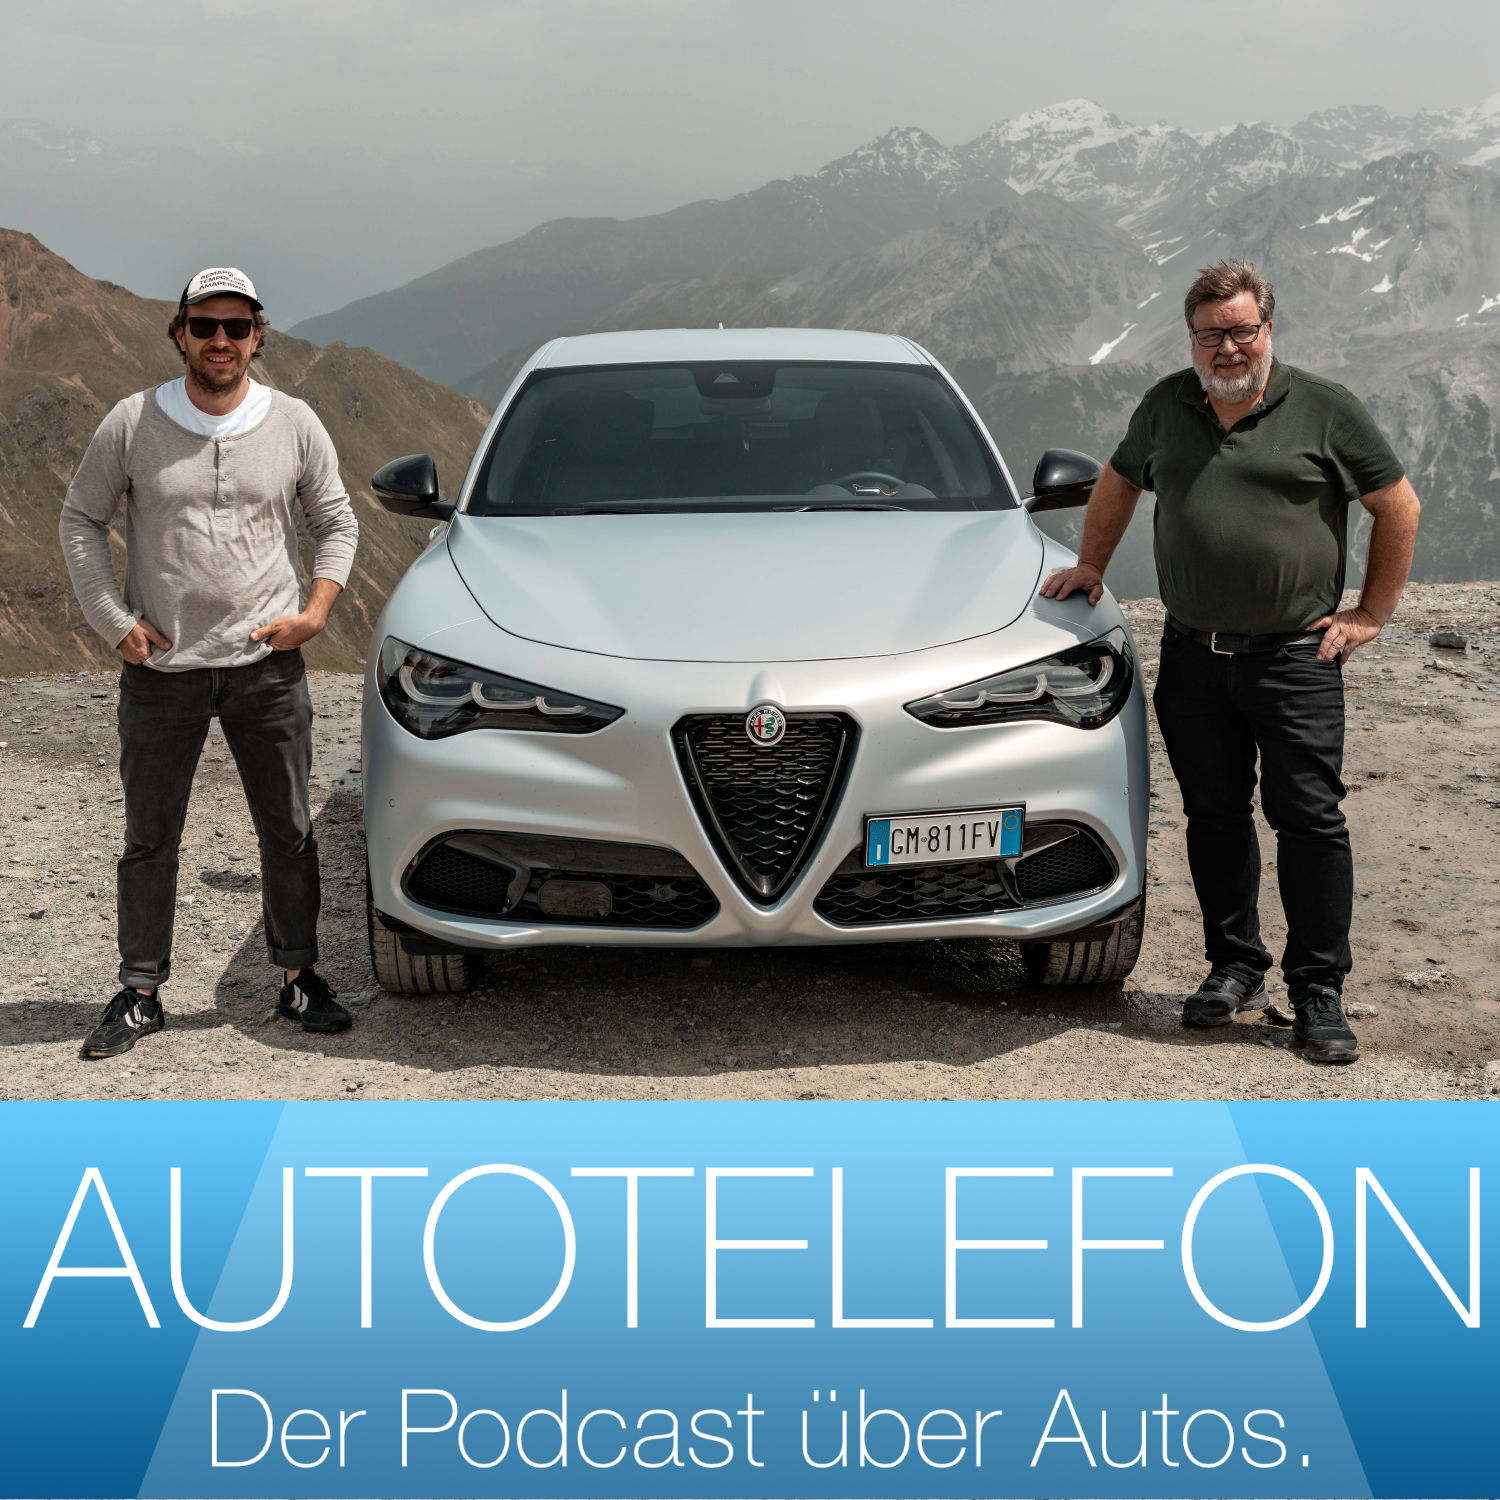 Im Stelvio über den Stelvio - Autotelefon - Der Podcast über Autos.